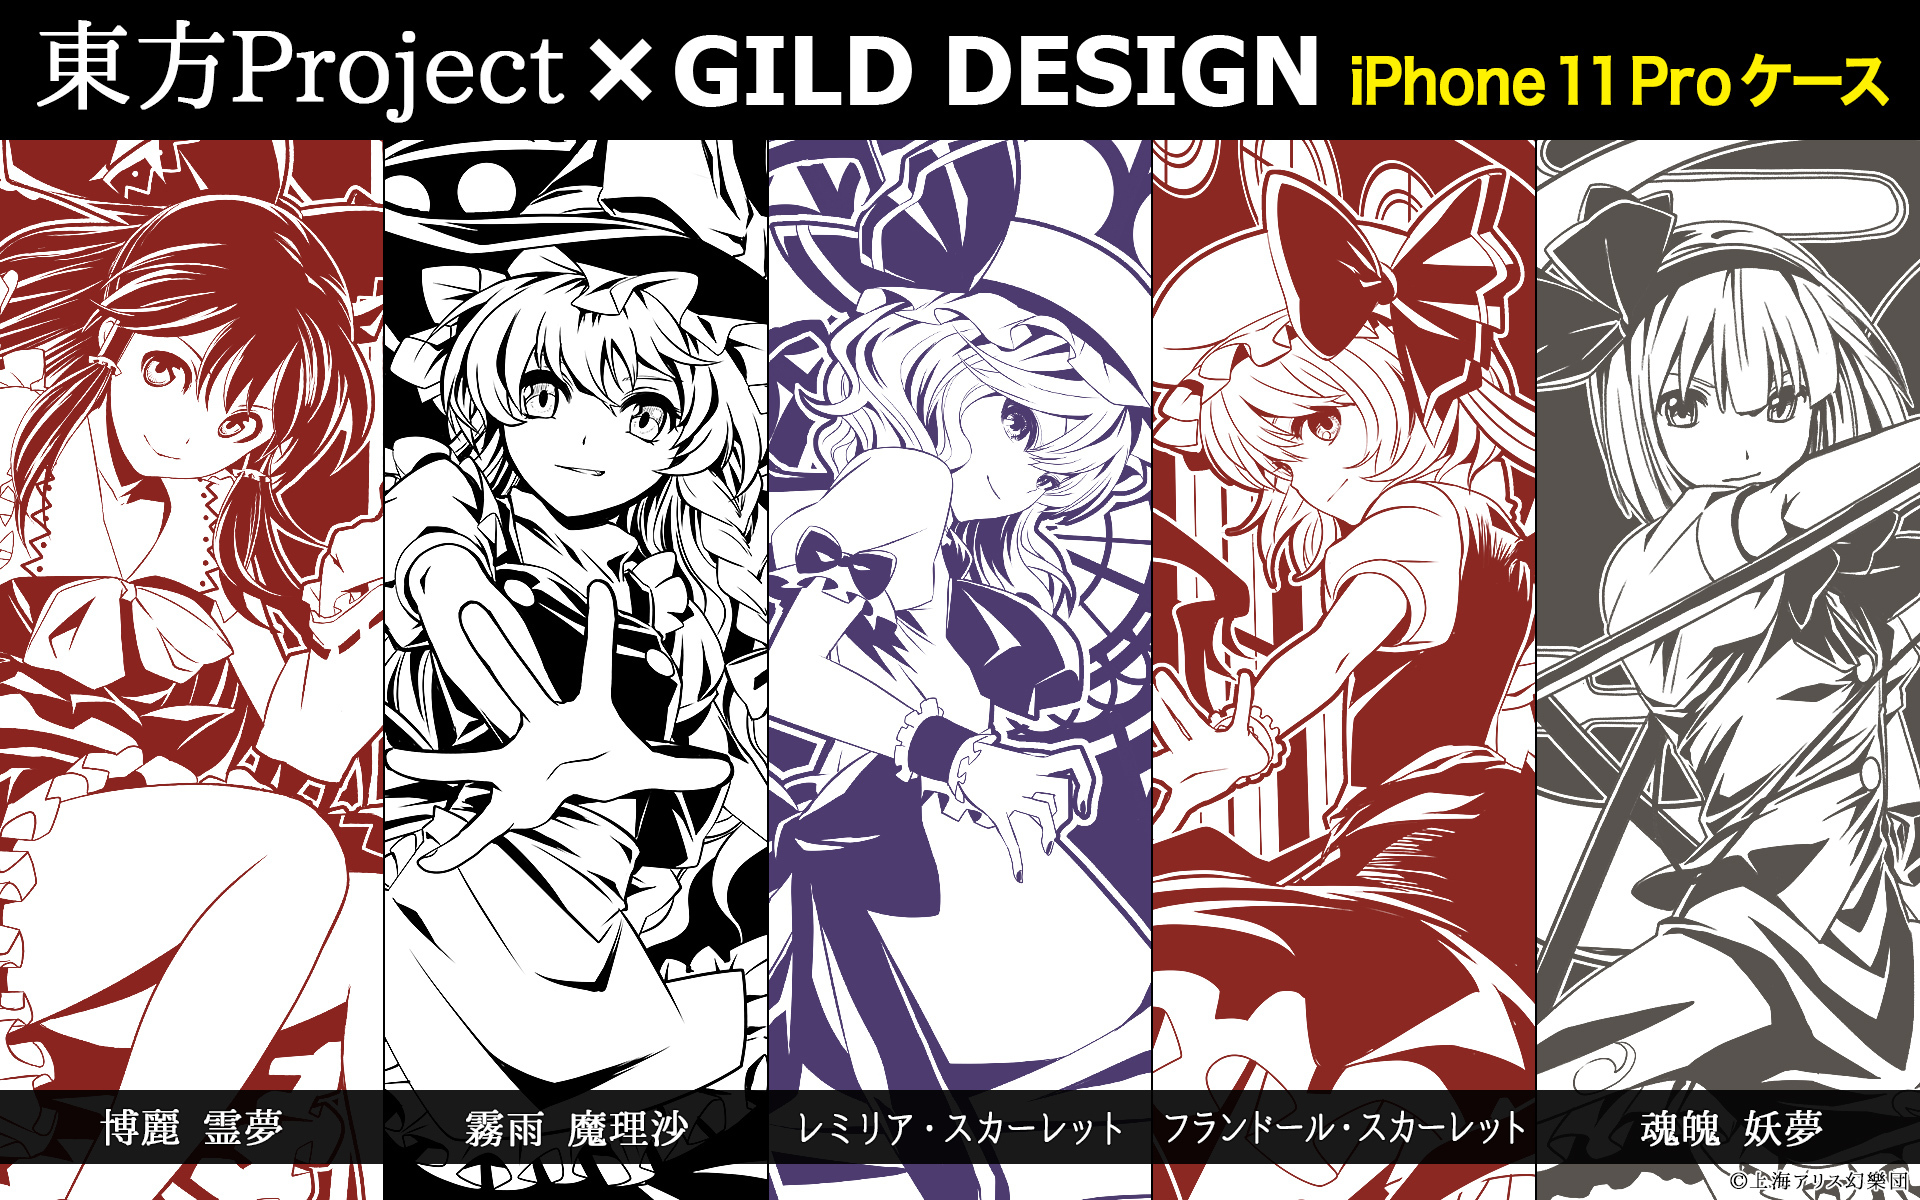 『東方Project』×『GILD design』iPhone 11Pro対応ケース　
オンラインストア『UD PREMIUM』にて12/27予約開始！